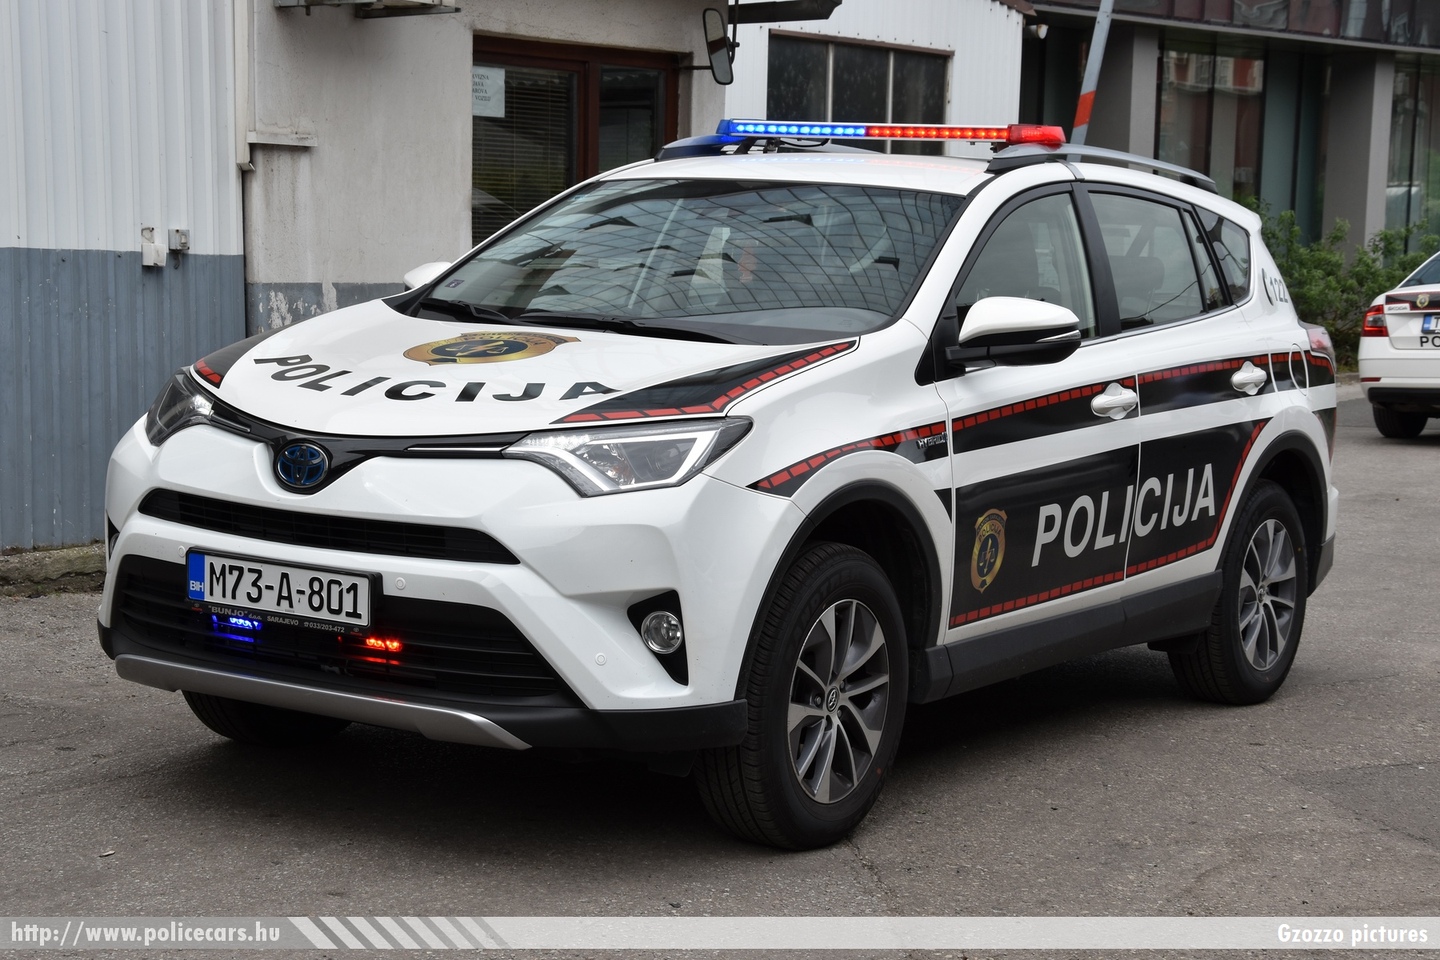 Toyota RAV4, Sarajevo, fotó: Gzozzo pictures
Keywords: Bosznia-Hercegovina bosnia bosnia-herzegovina bosnyák police policecar rendőrautó rendőr rendőrség